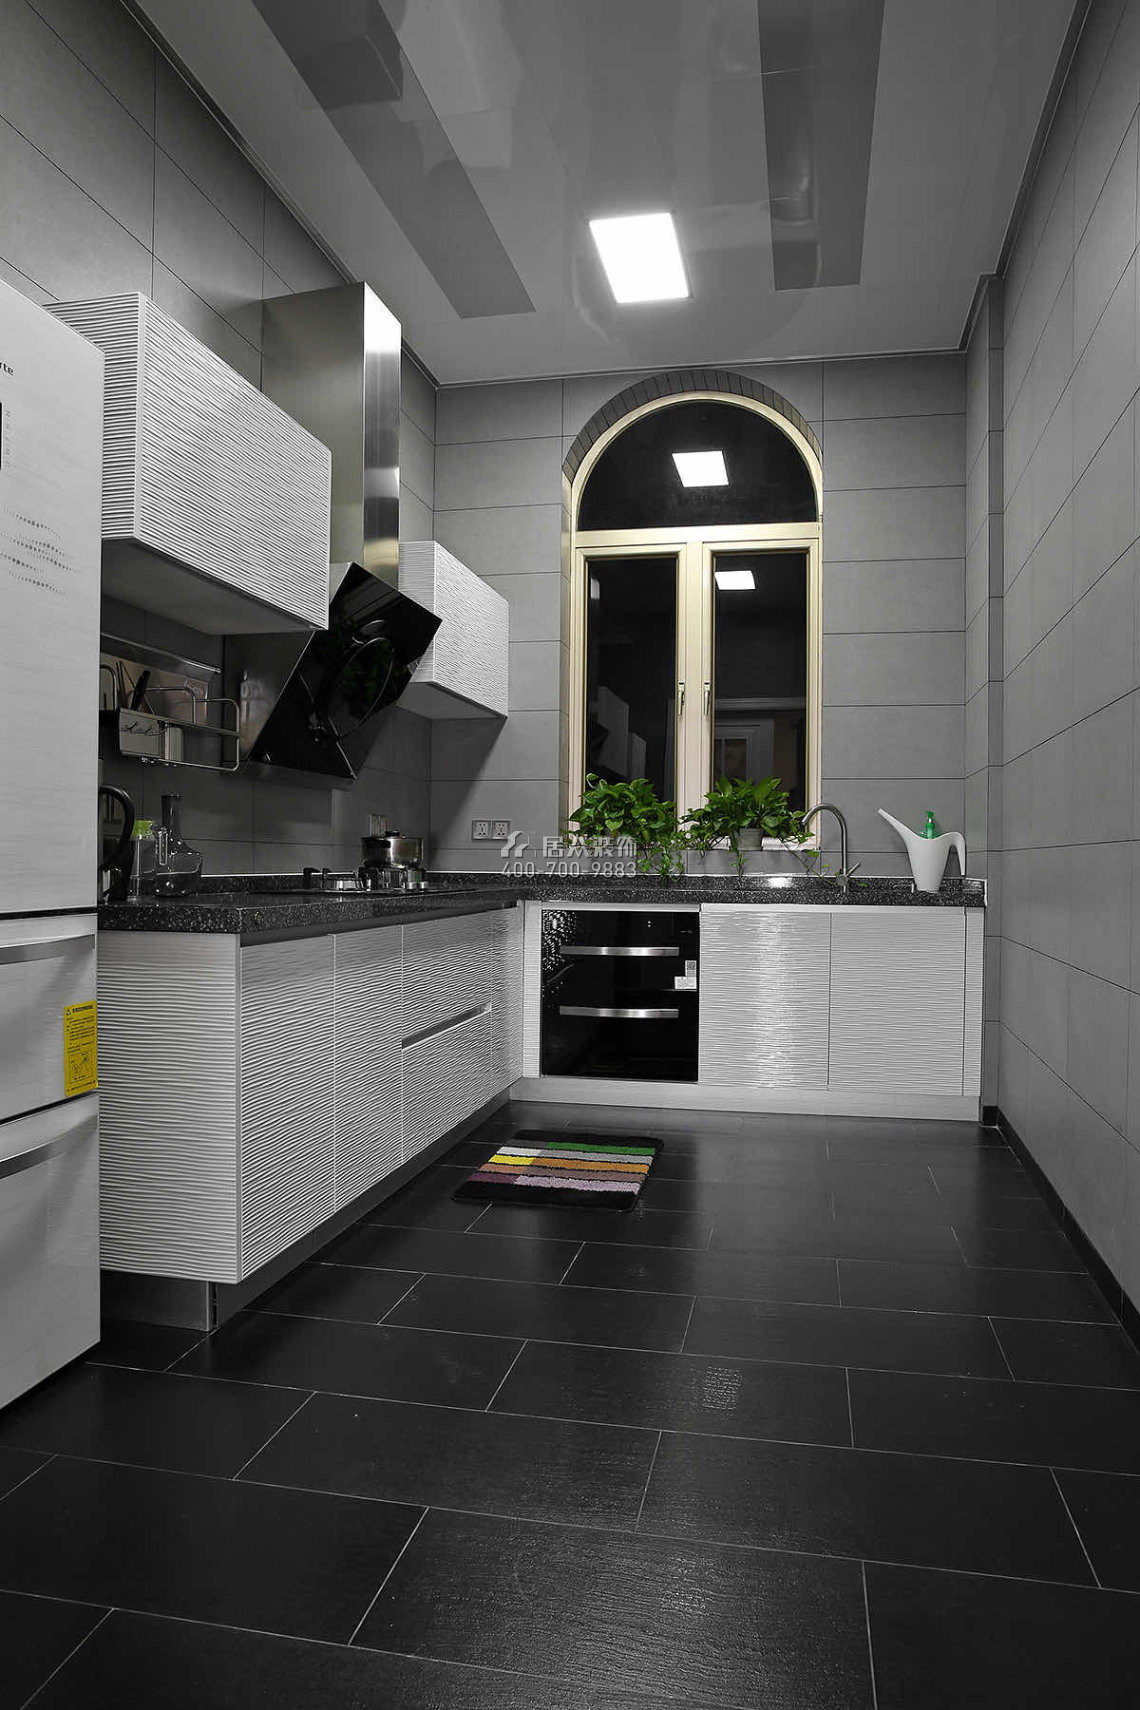 豐泰觀山碧水650平方米現代簡約風格別墅戶型廚房裝修效果圖